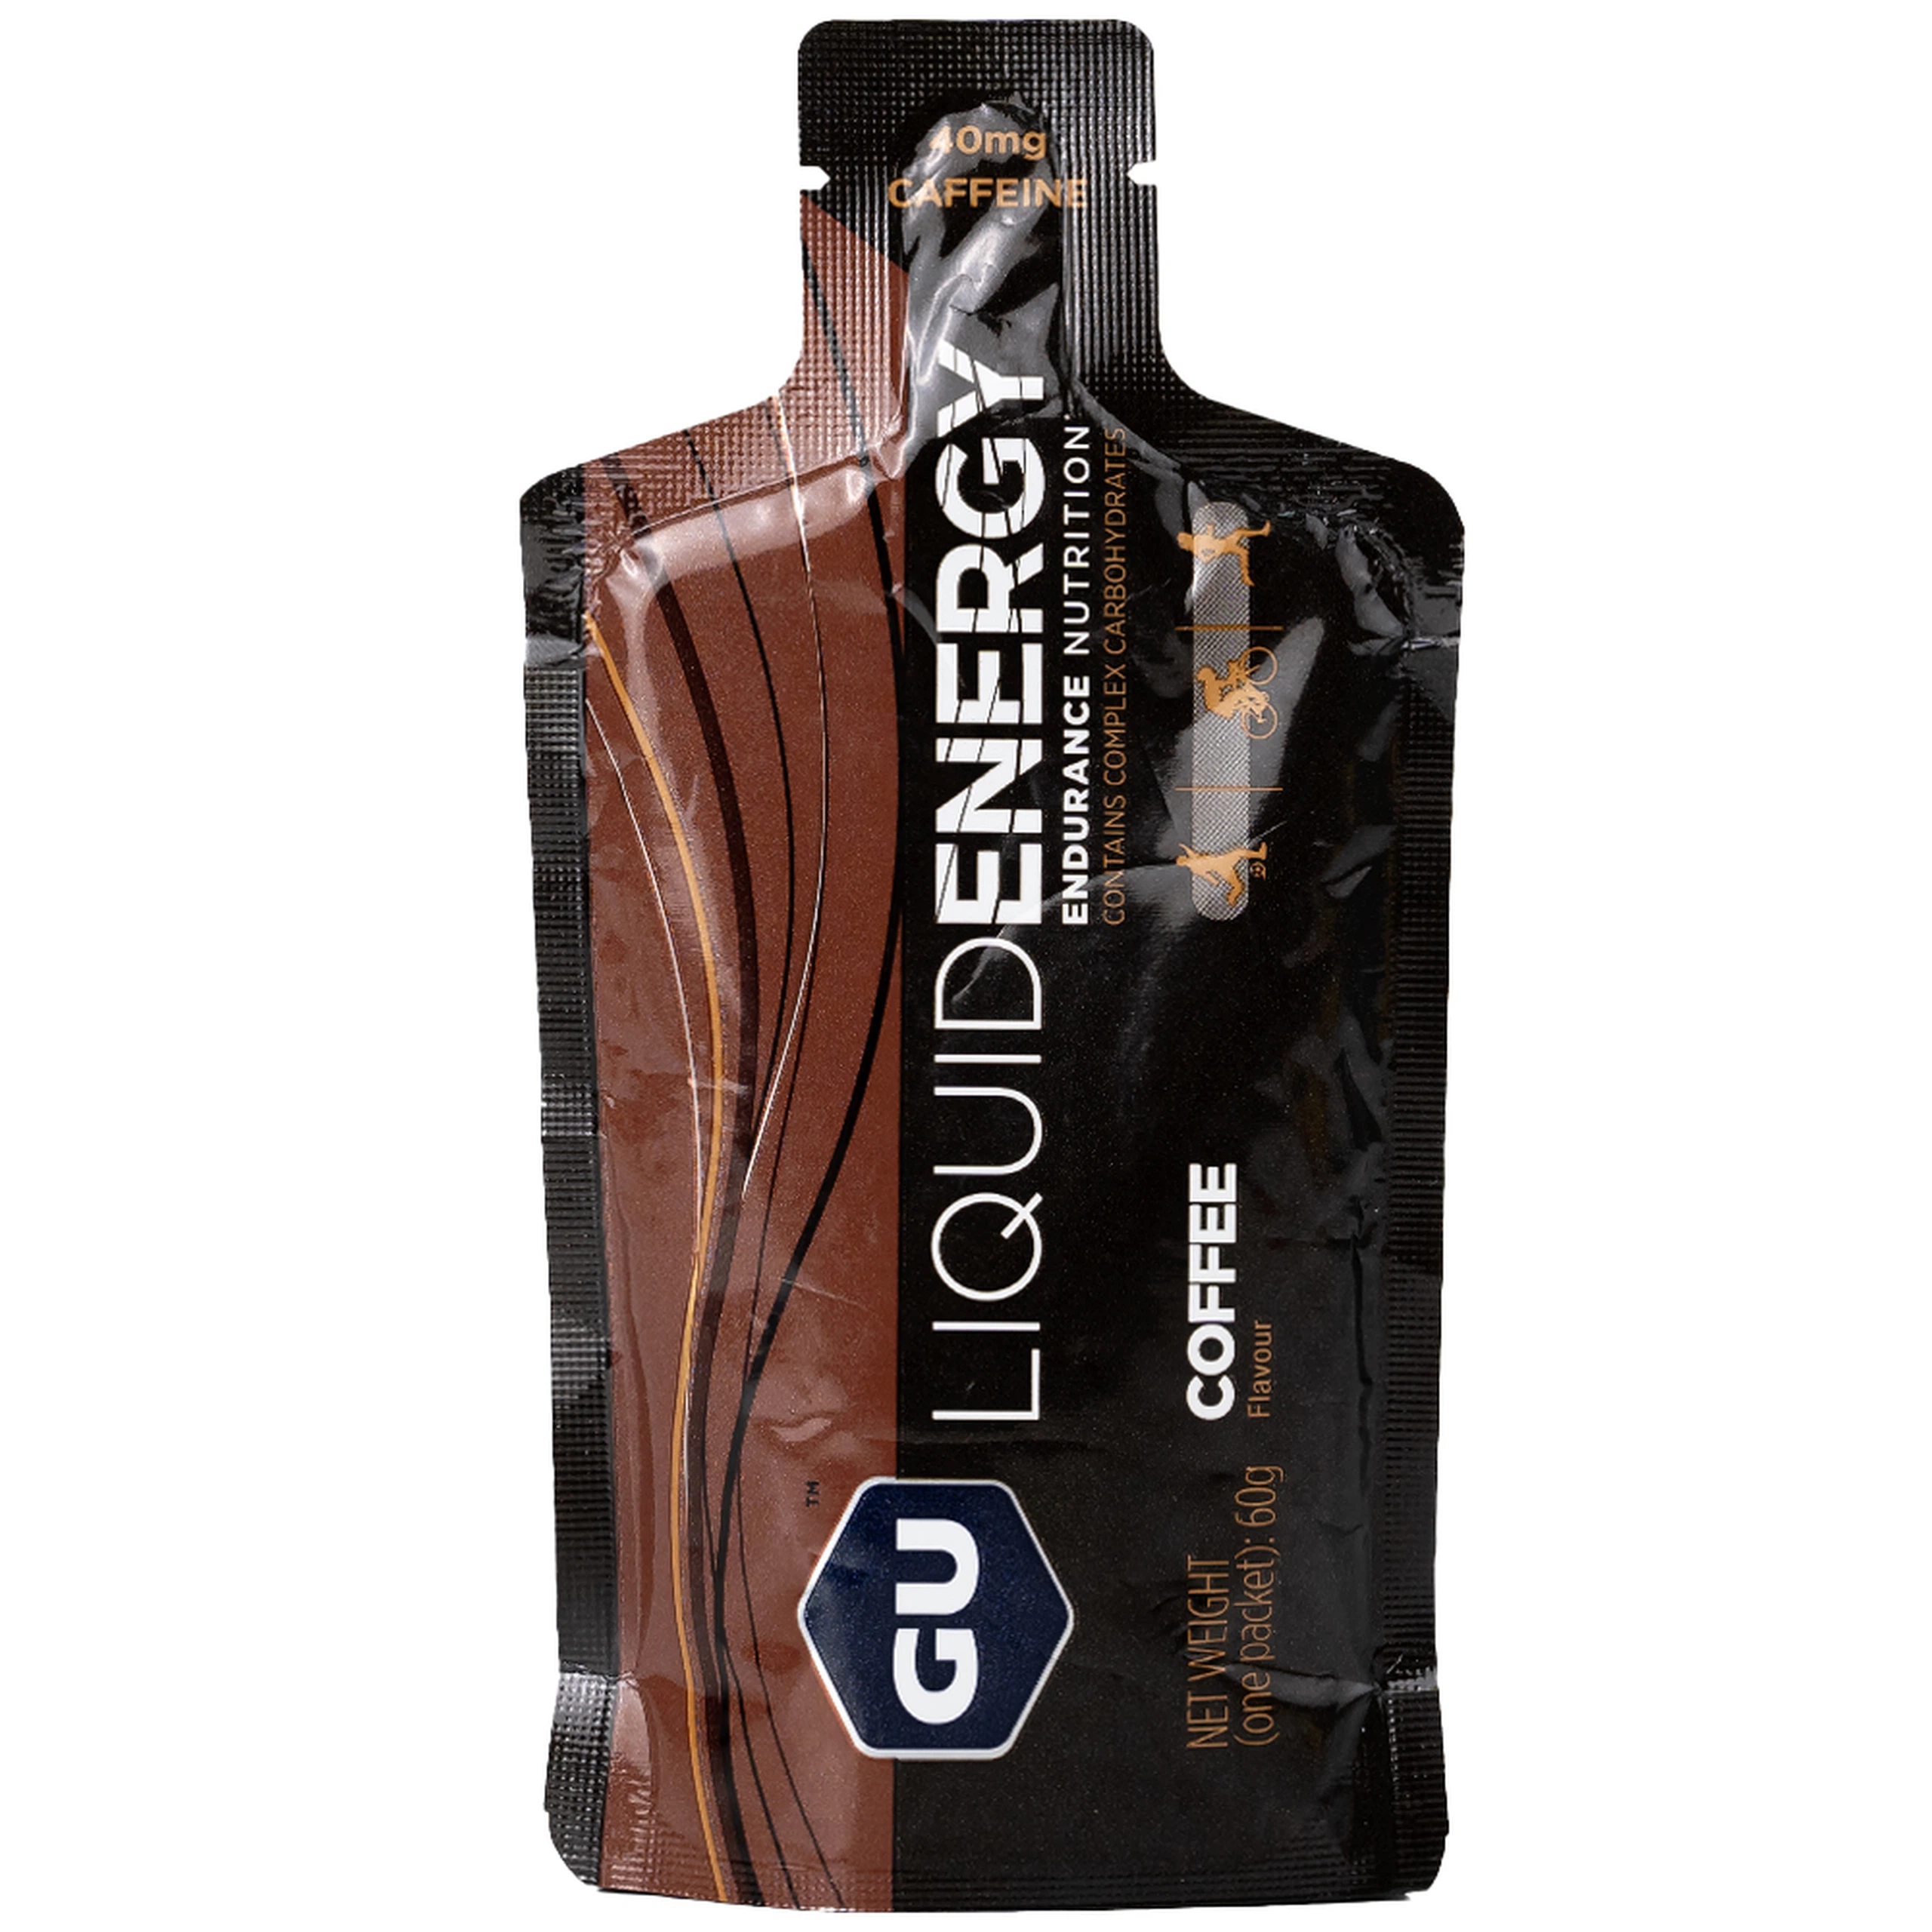 Thực phẩm bổ sung GU Gel Liquid Energy Coffee 60g bổ sung năng lượng trong các hoạt động thể thao